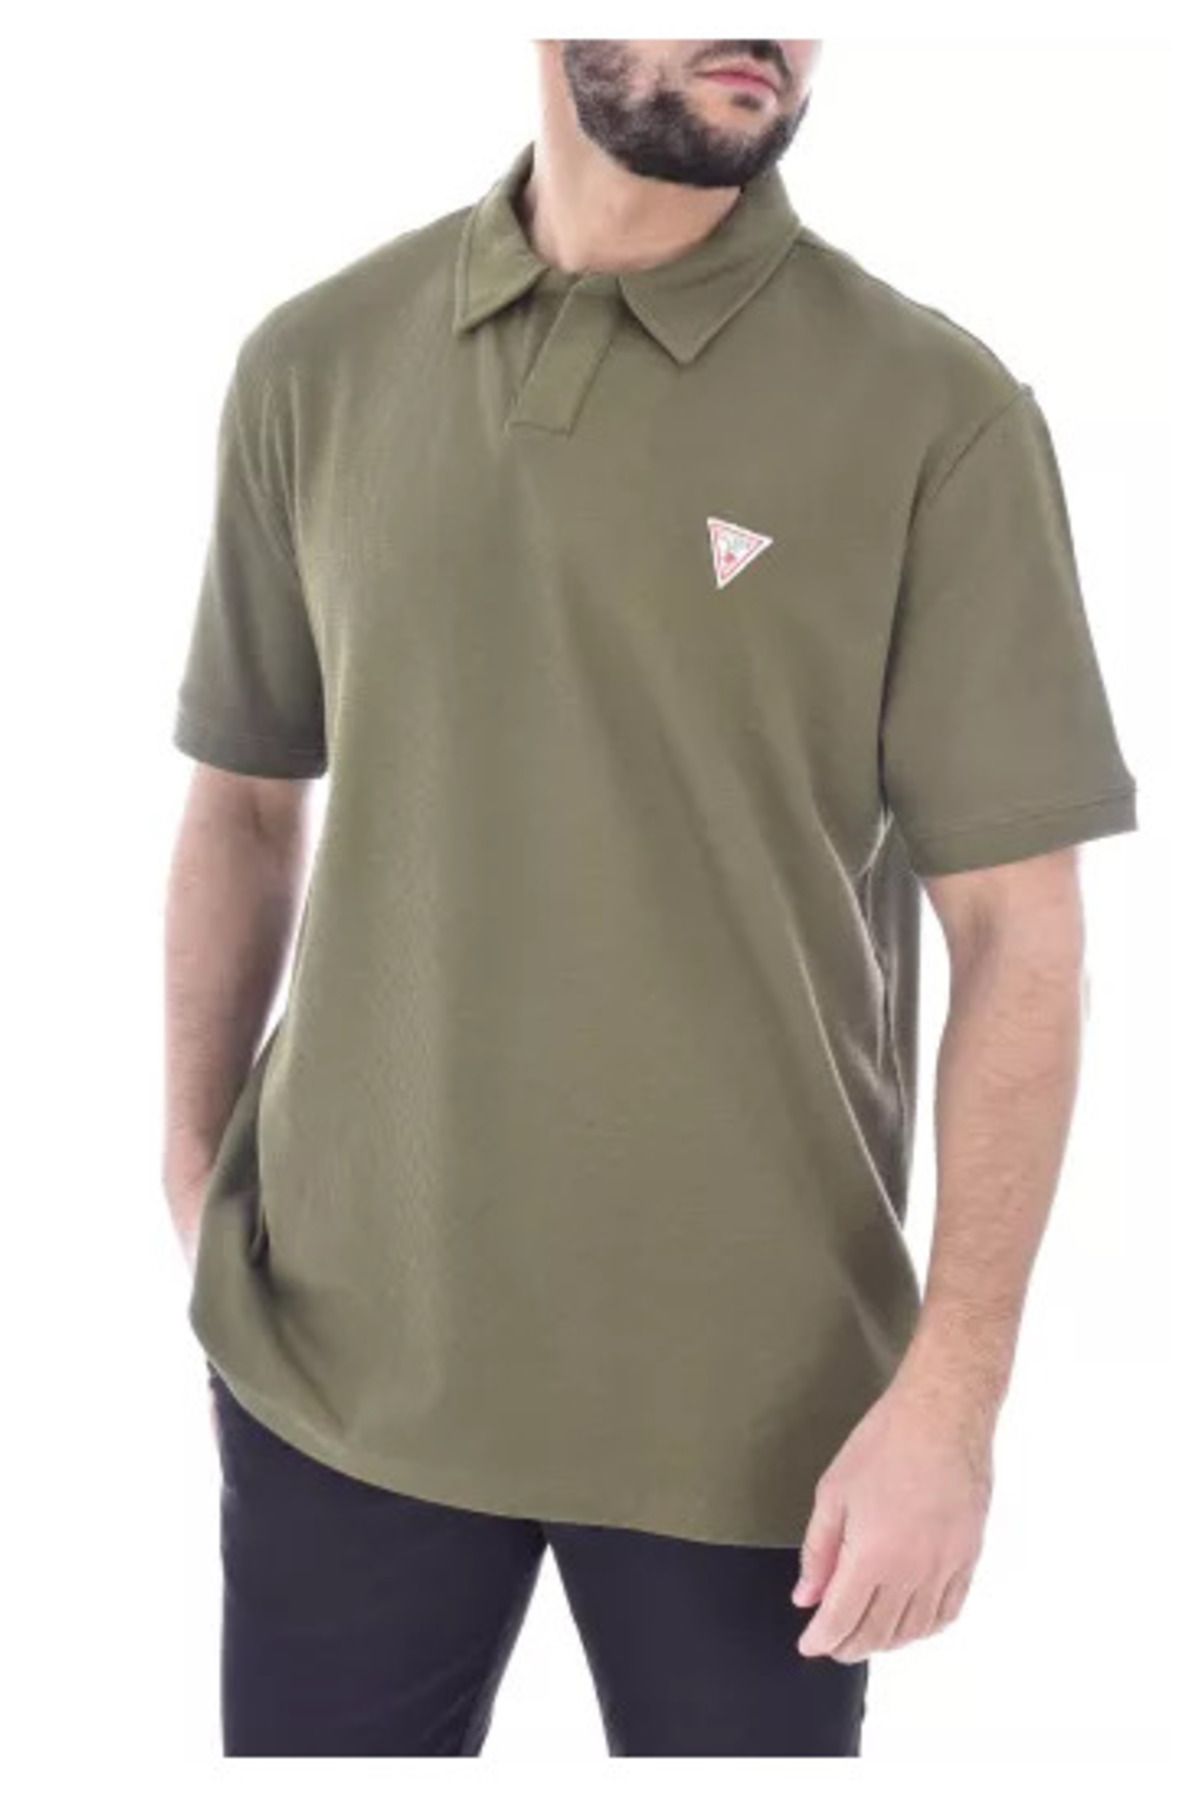 Guess Design Mesh Erkek Regular Fit Polo T-Shirt